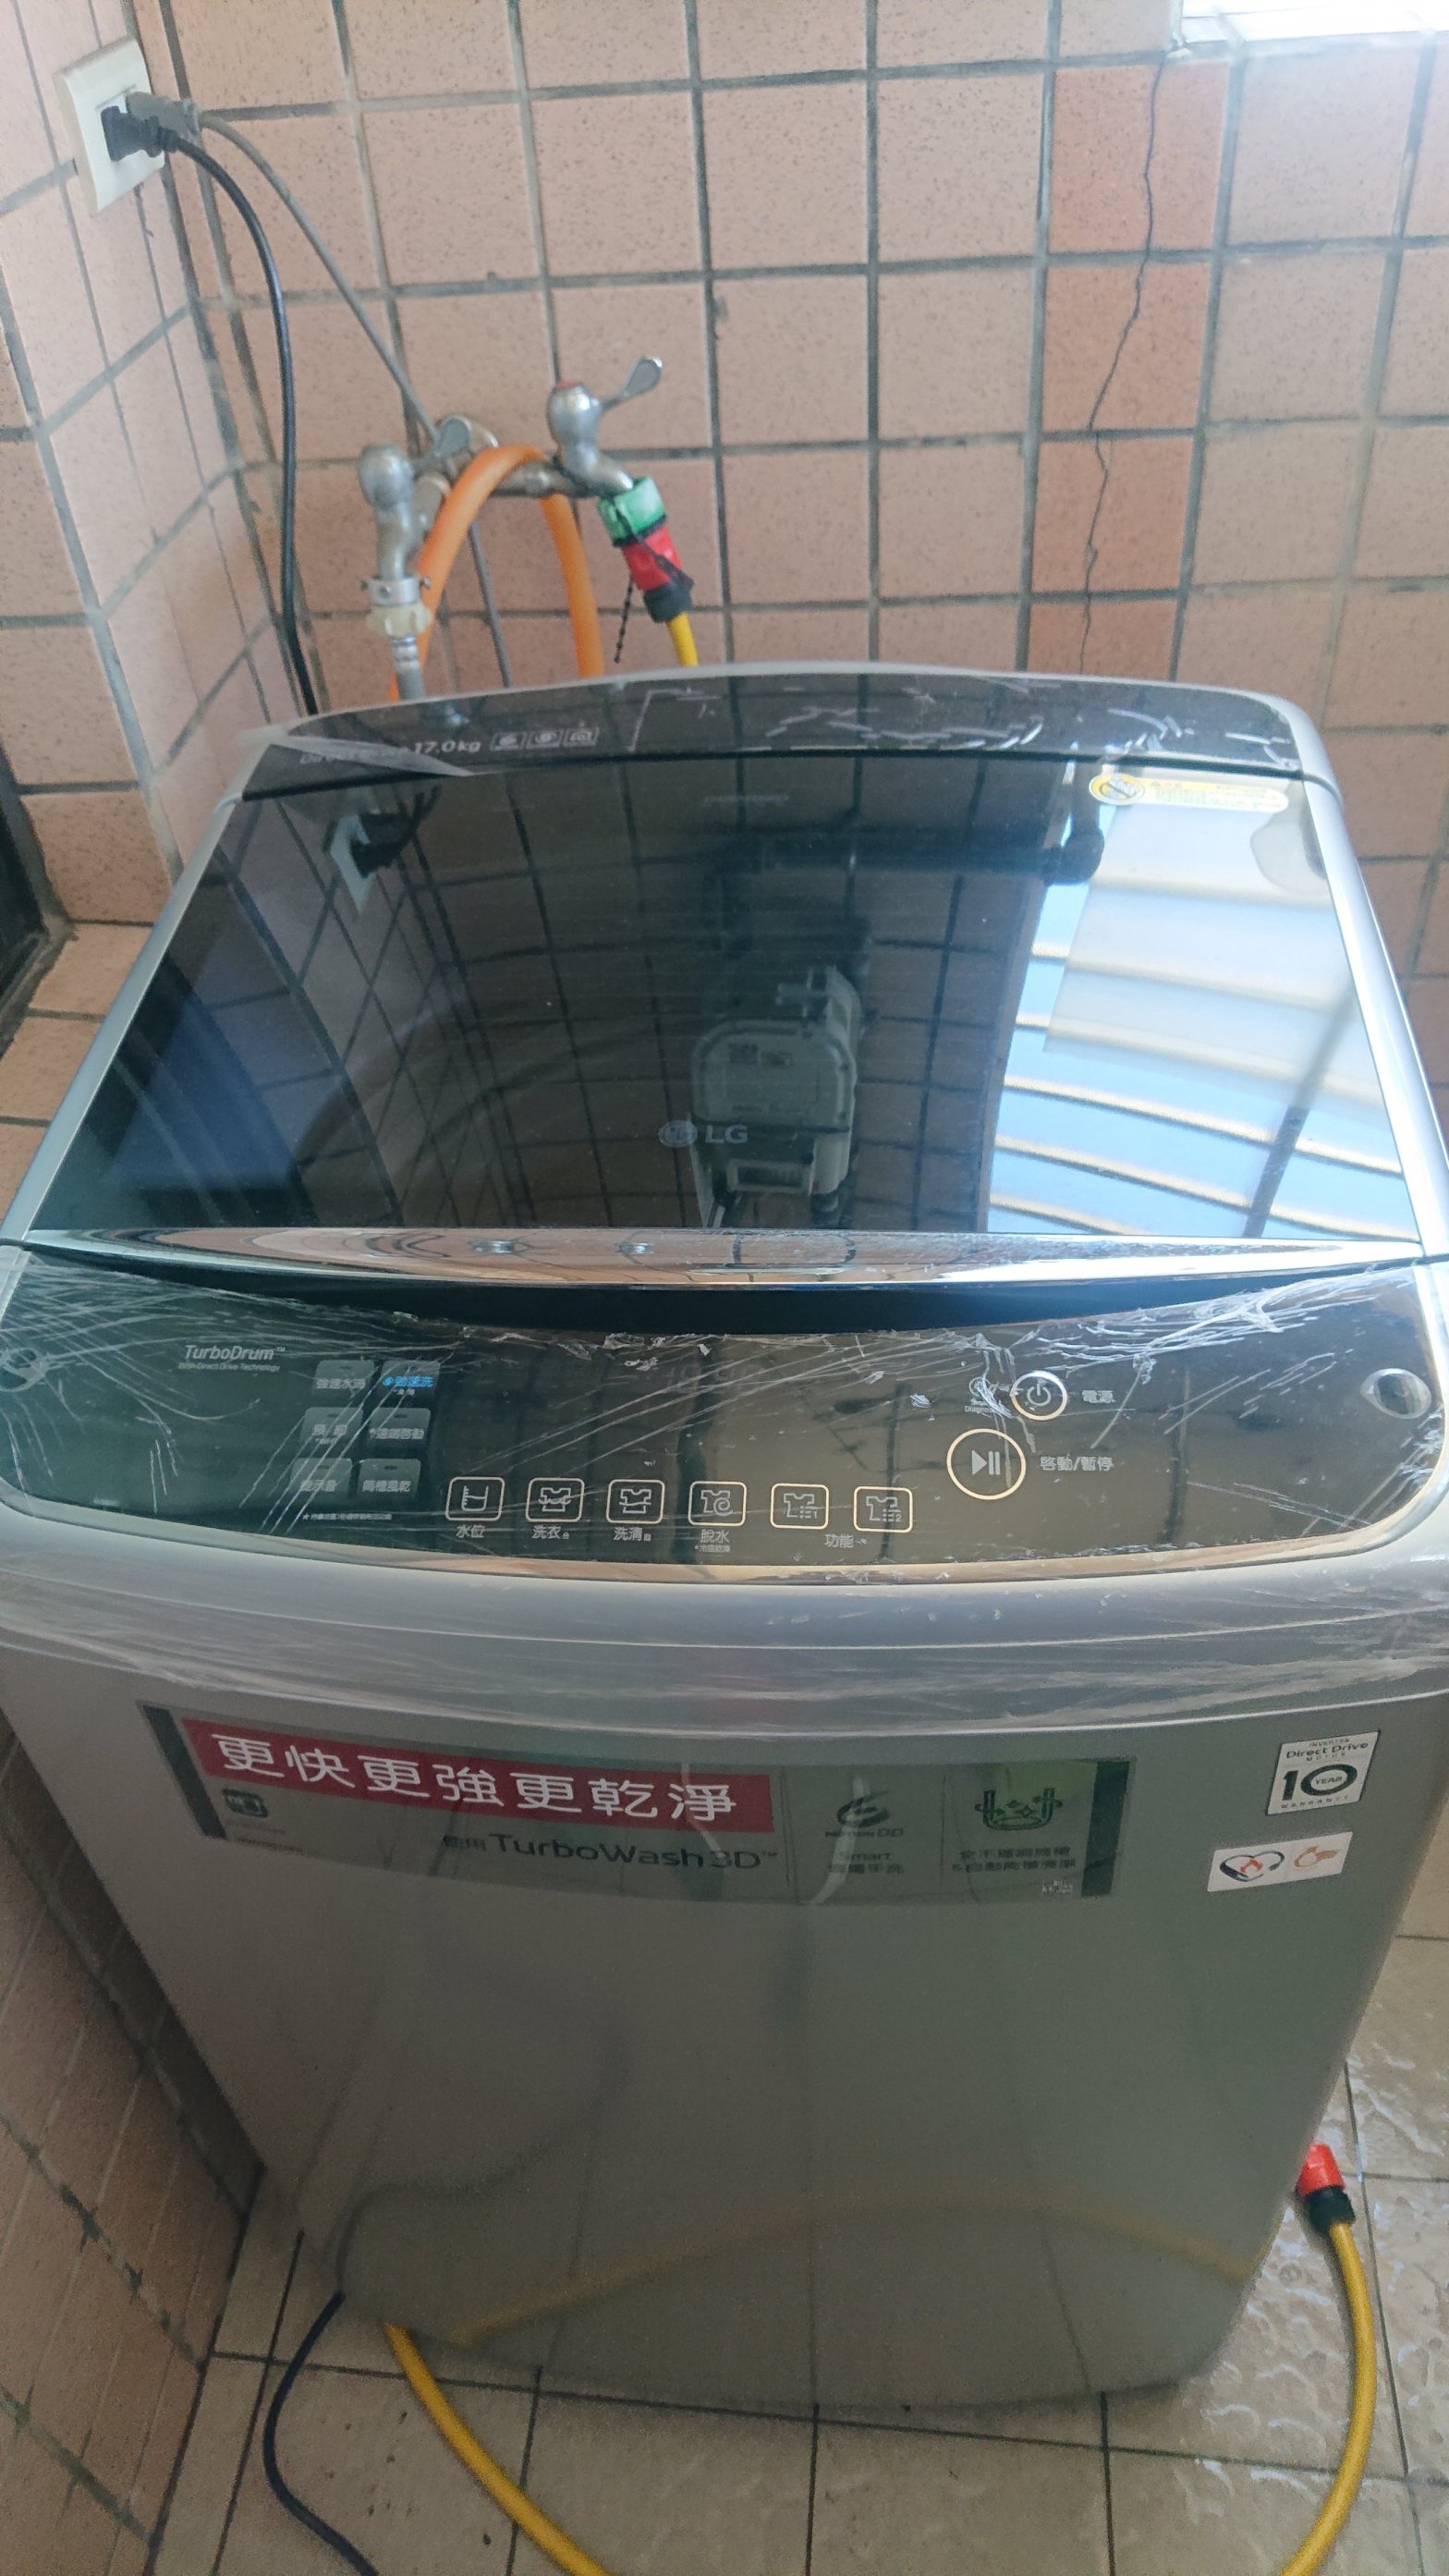 LG洗衣機WT-D179SG